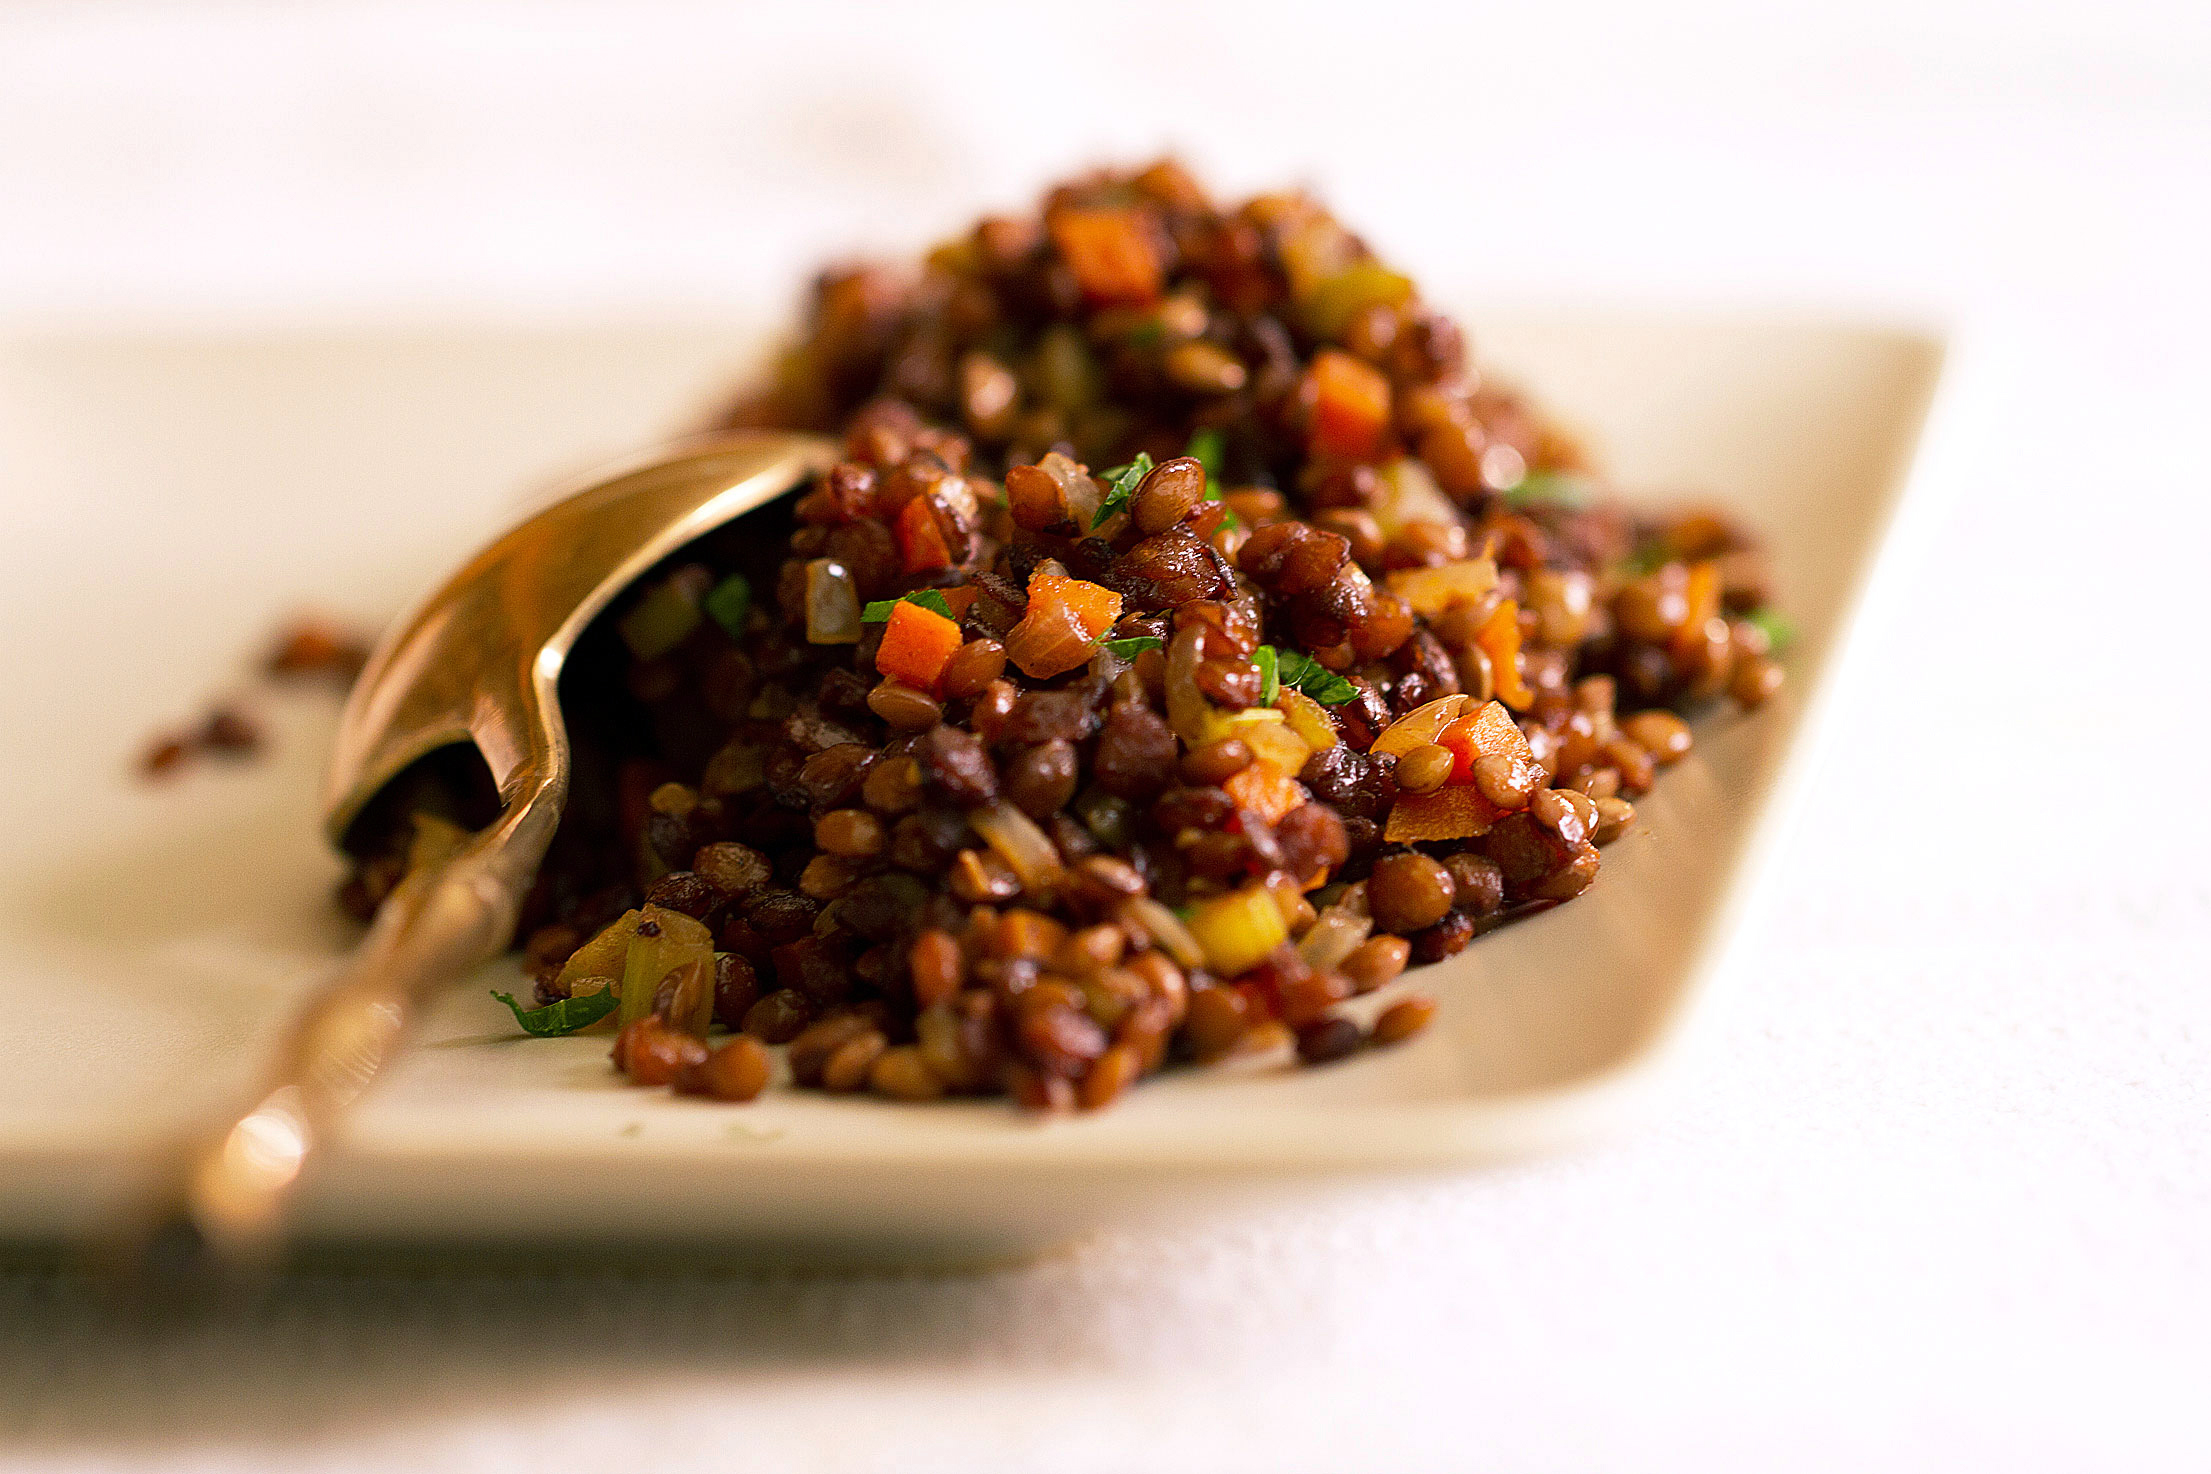 Caramelized Puy lentils